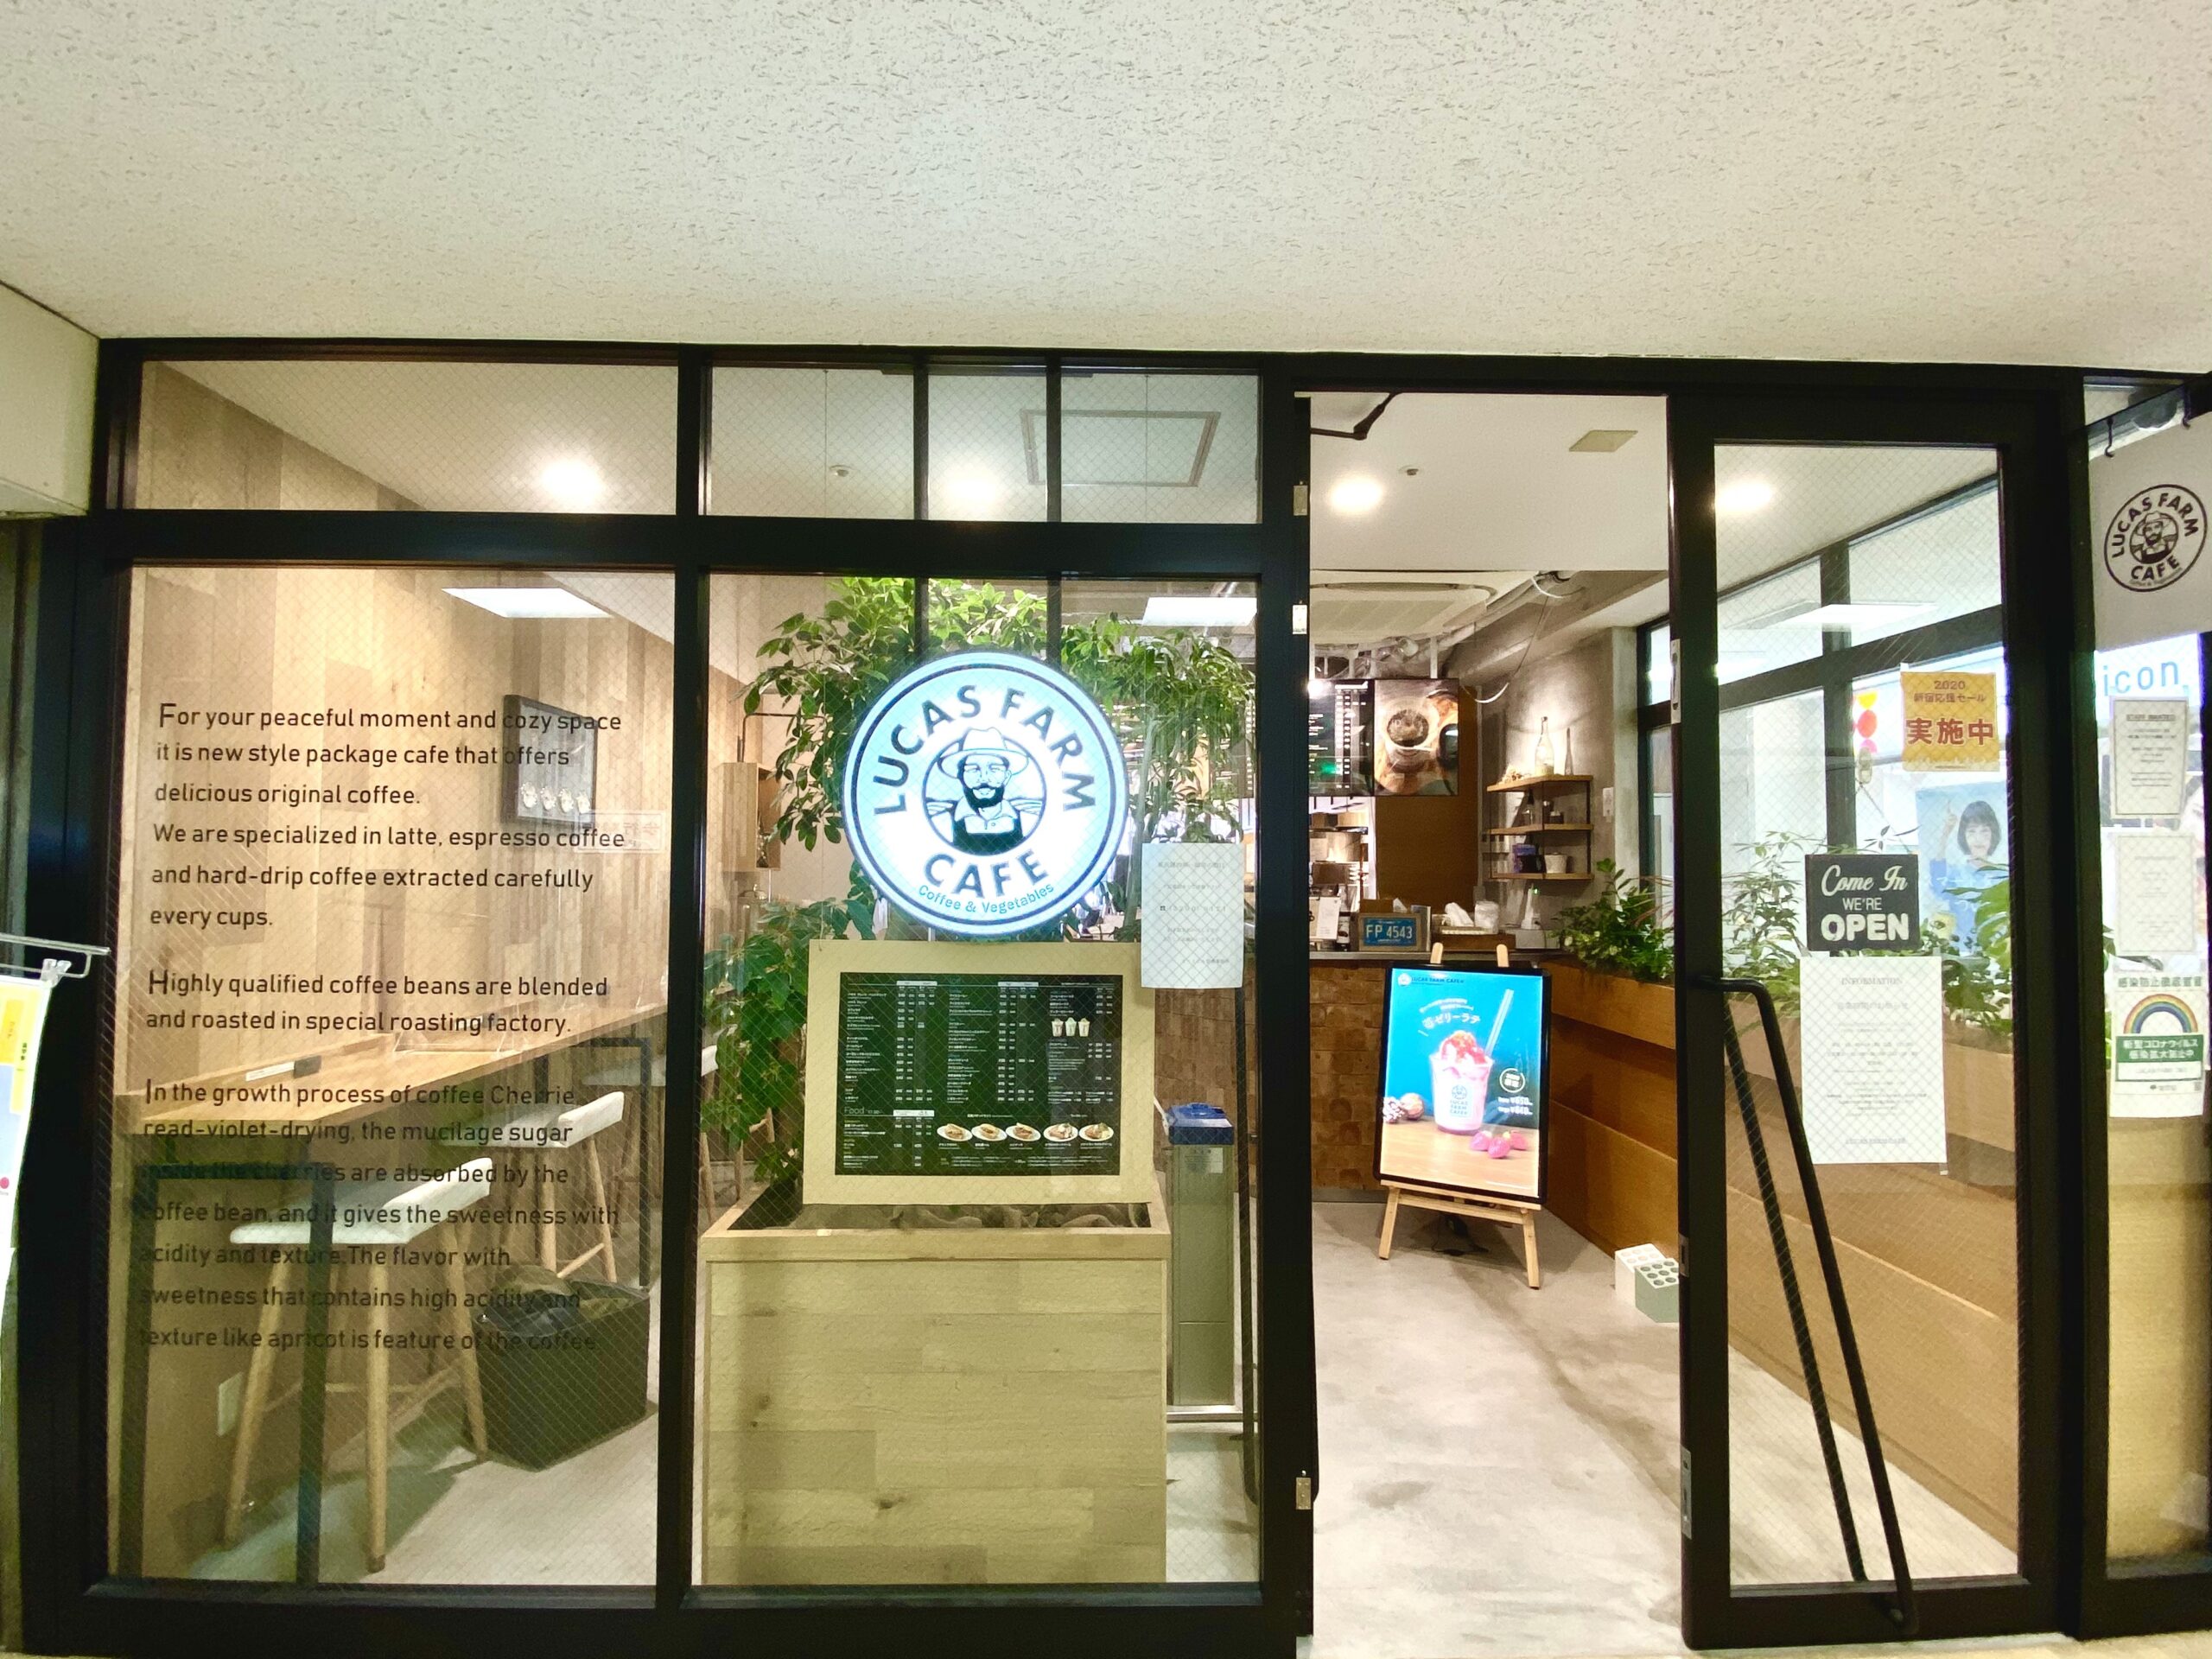 ブルートラベルエンジニア パソコン作業（プログラミング学習環境）におすすめのカフェ|新宿・高田馬場 LUCAS FARM CAFE（ルーカス・ファーム・カフェ）